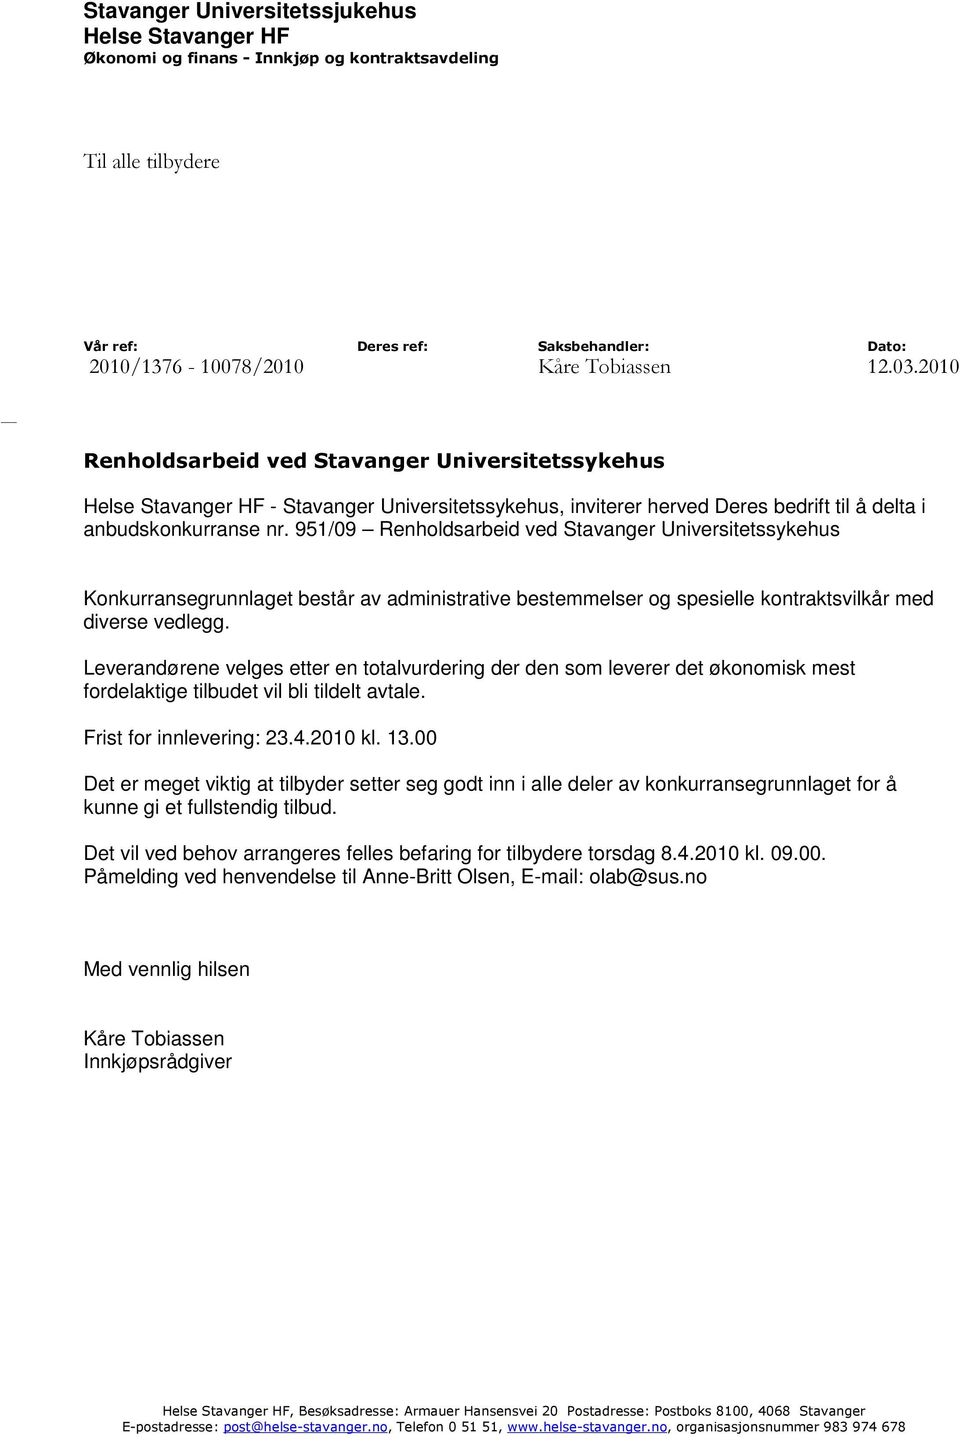 951/09 Renholdsarbeid ved Stavanger Universitetssykehus Konkurransegrunnlaget består av administrative bestemmelser og spesielle kontraktsvilkår med diverse vedlegg.